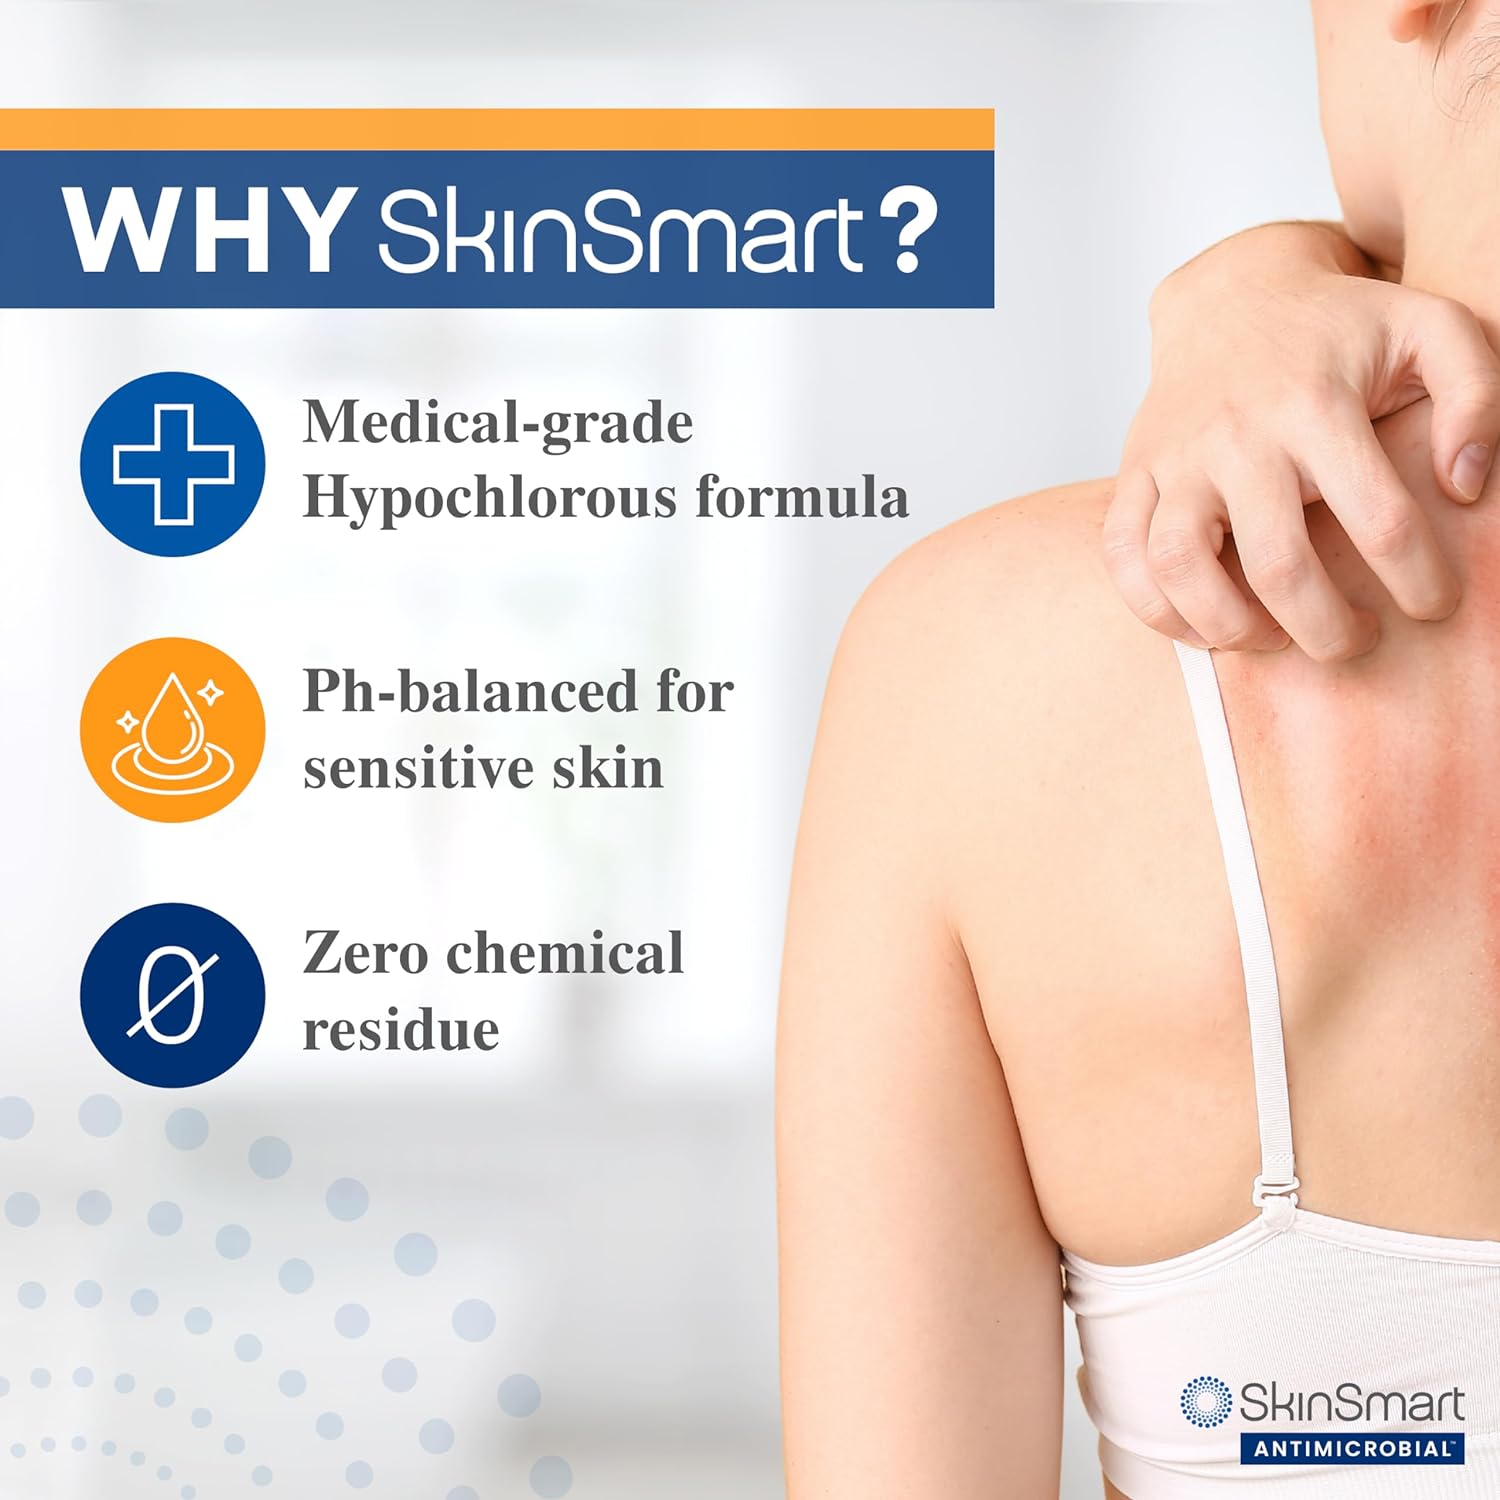 SkinSmart Eczema Therapy Spray | 8 oz